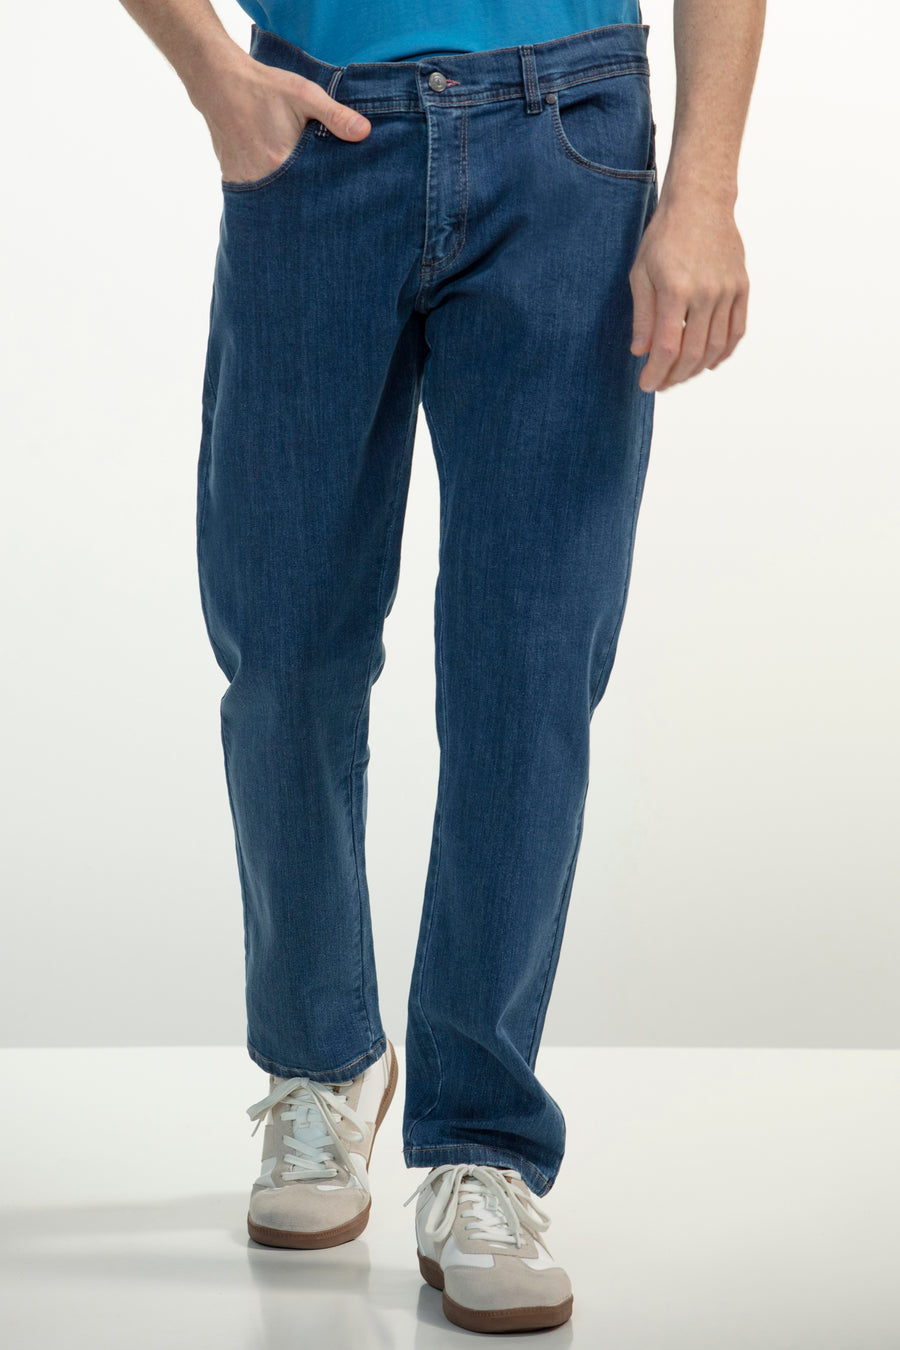 Calças jeans slim fit de 5 bolsos e cintura com presilhas.